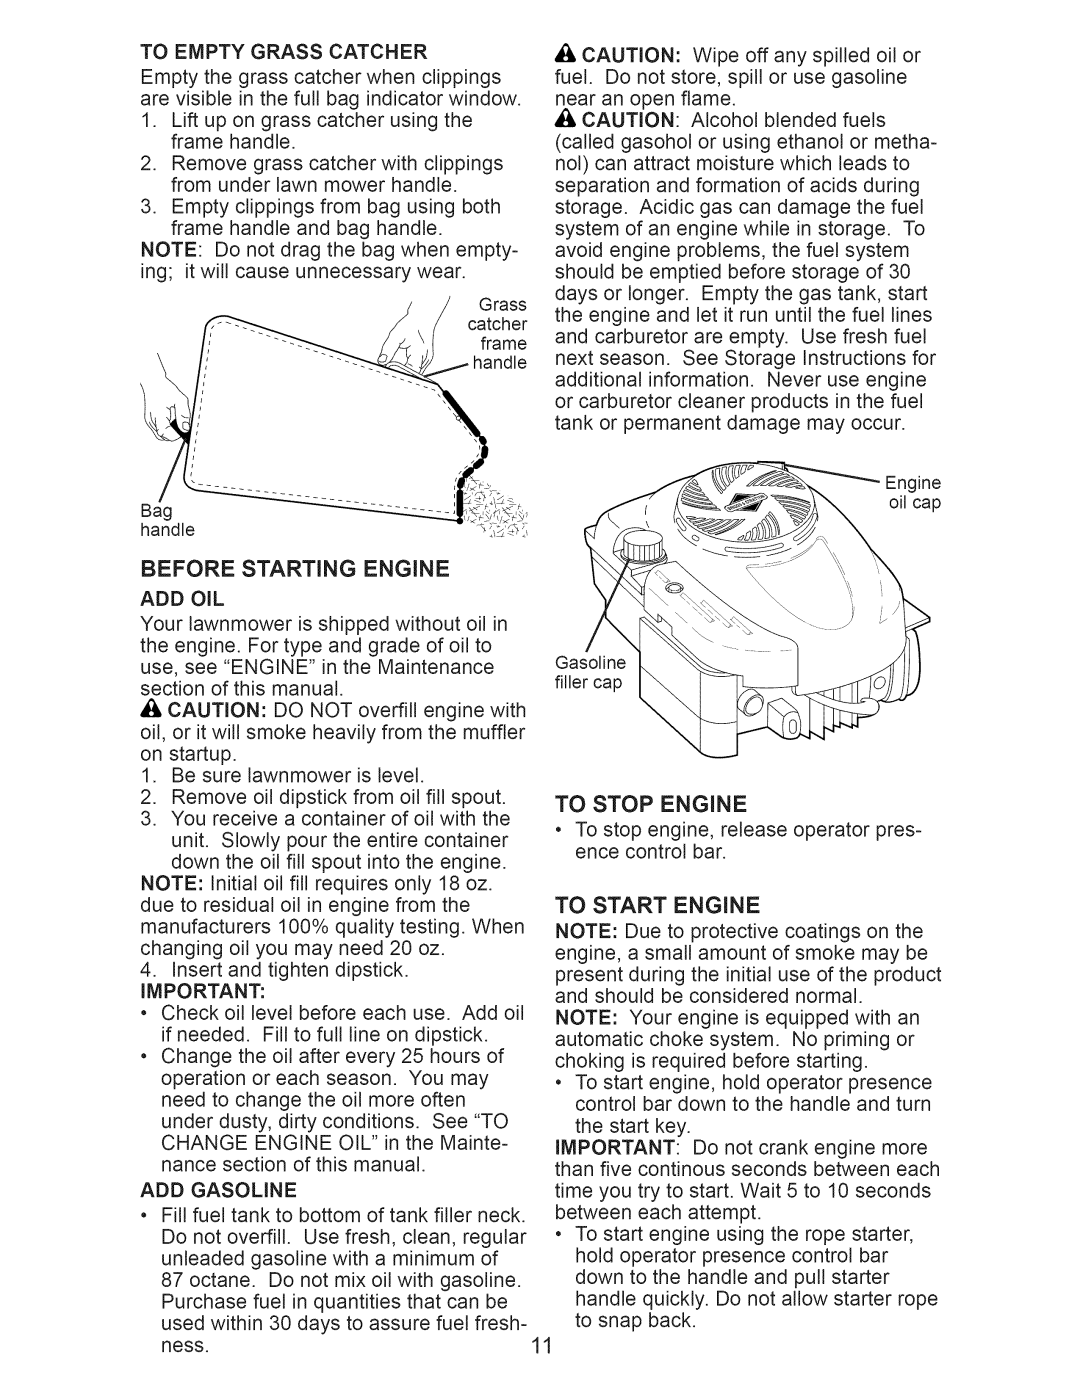 Craftsman 917.374362 manual Before Starting Engine 